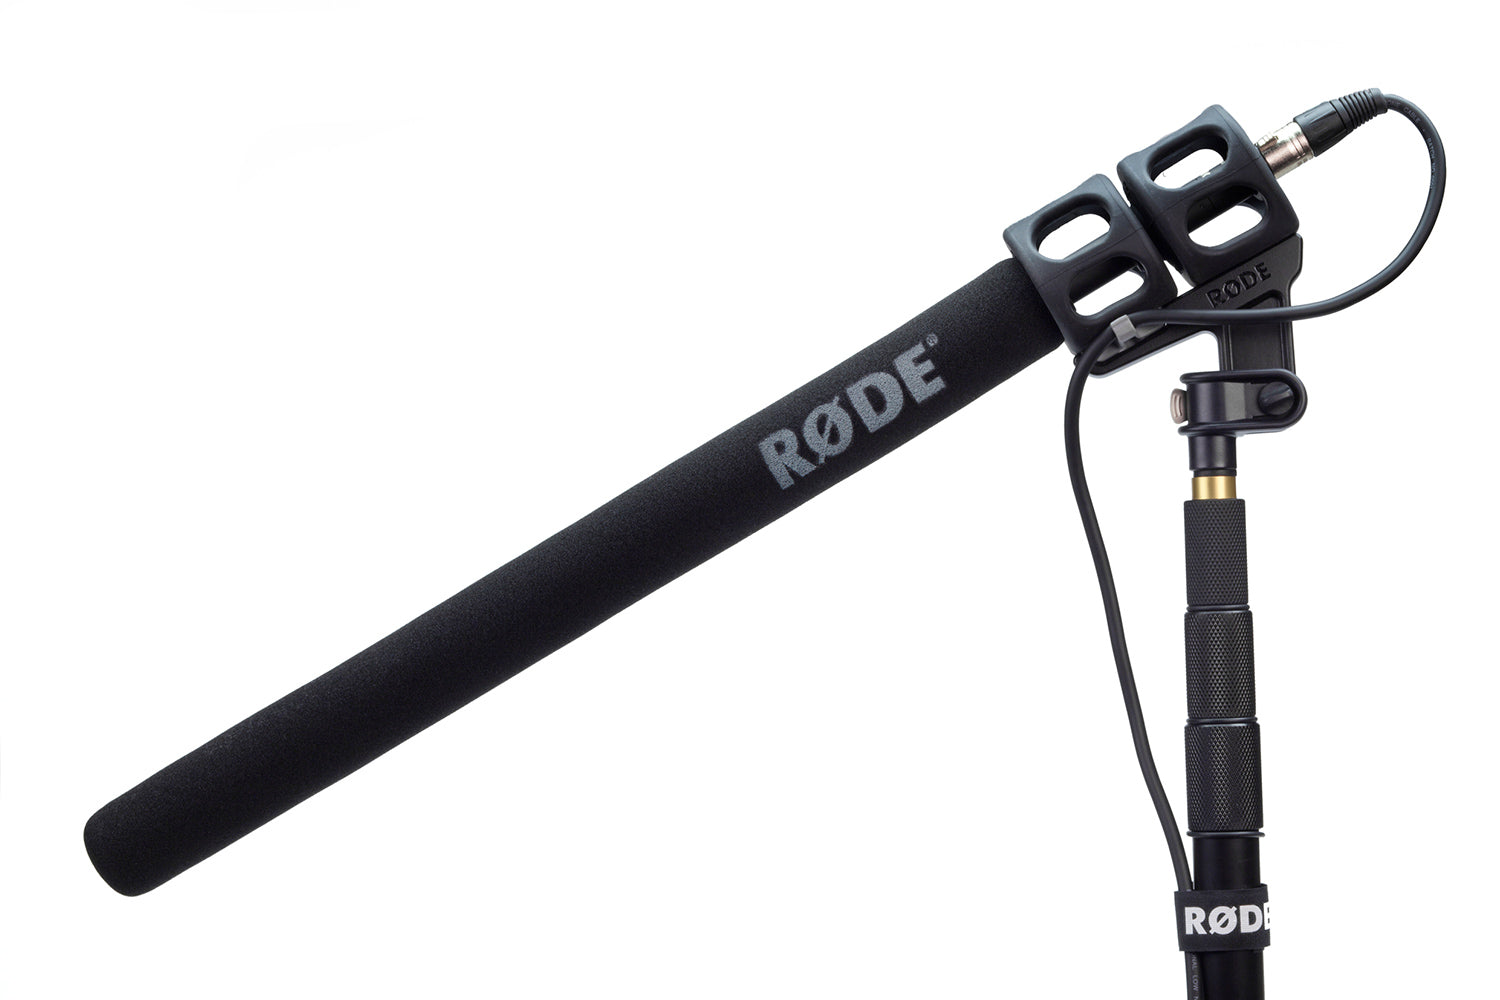 Rode NTG8 Shotgun Condenser Microphone (NTG-8) 10 Years Warranty [Made in Australia], RODE, CONDENSER MICROPHONE, rode-condenser-microphone-ntg8, ZOSO MUSIC SDN BHD